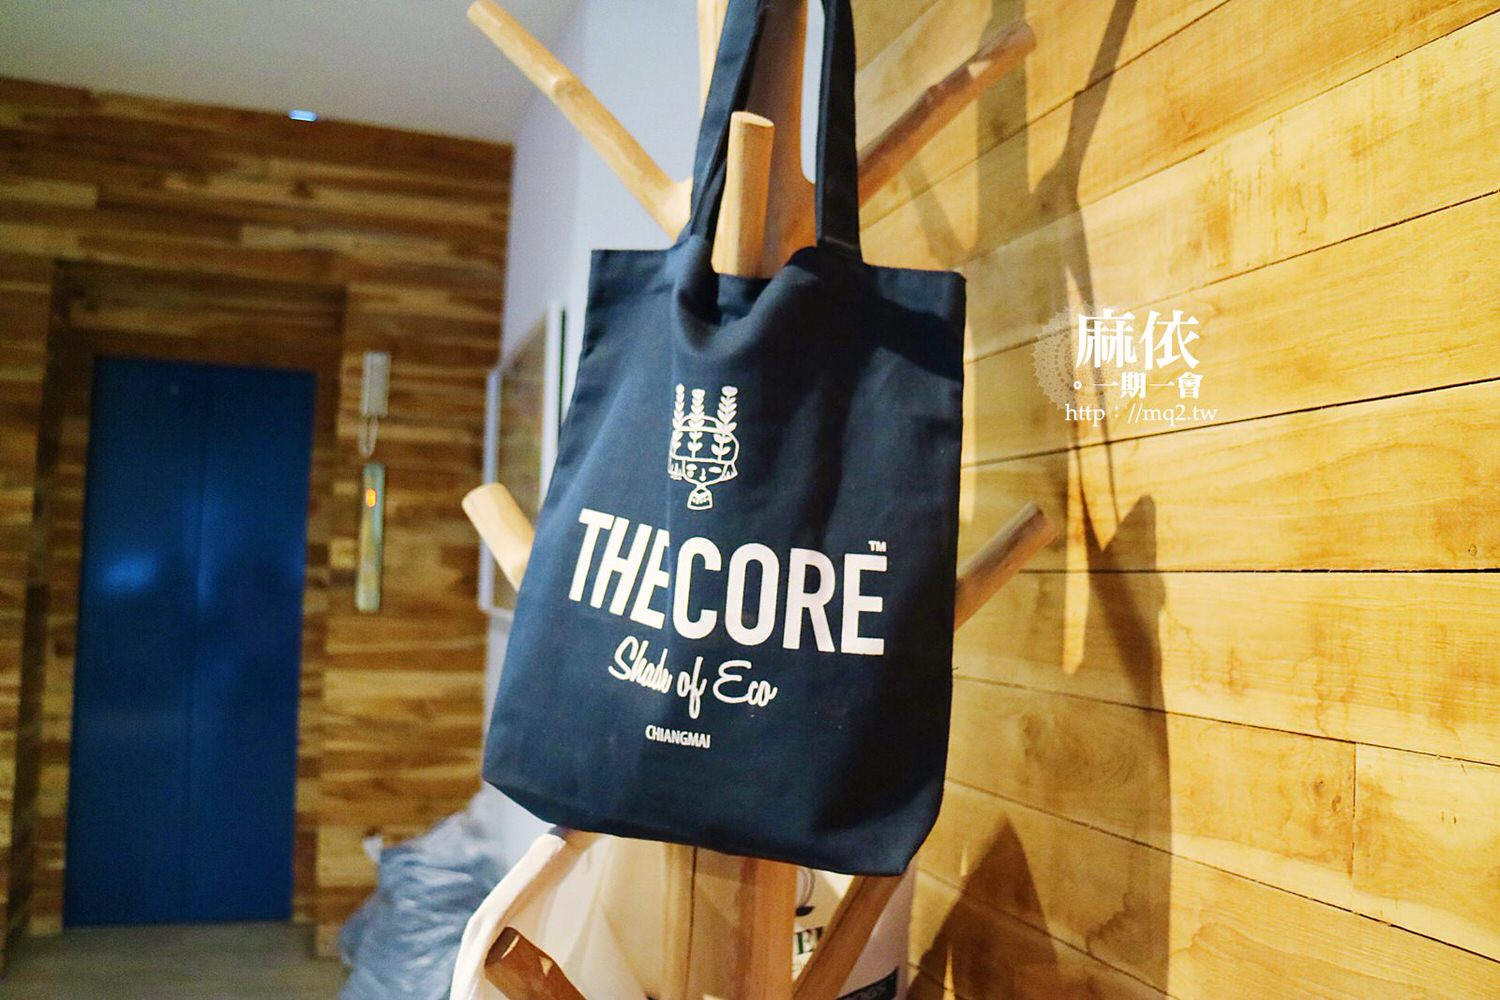 thecore